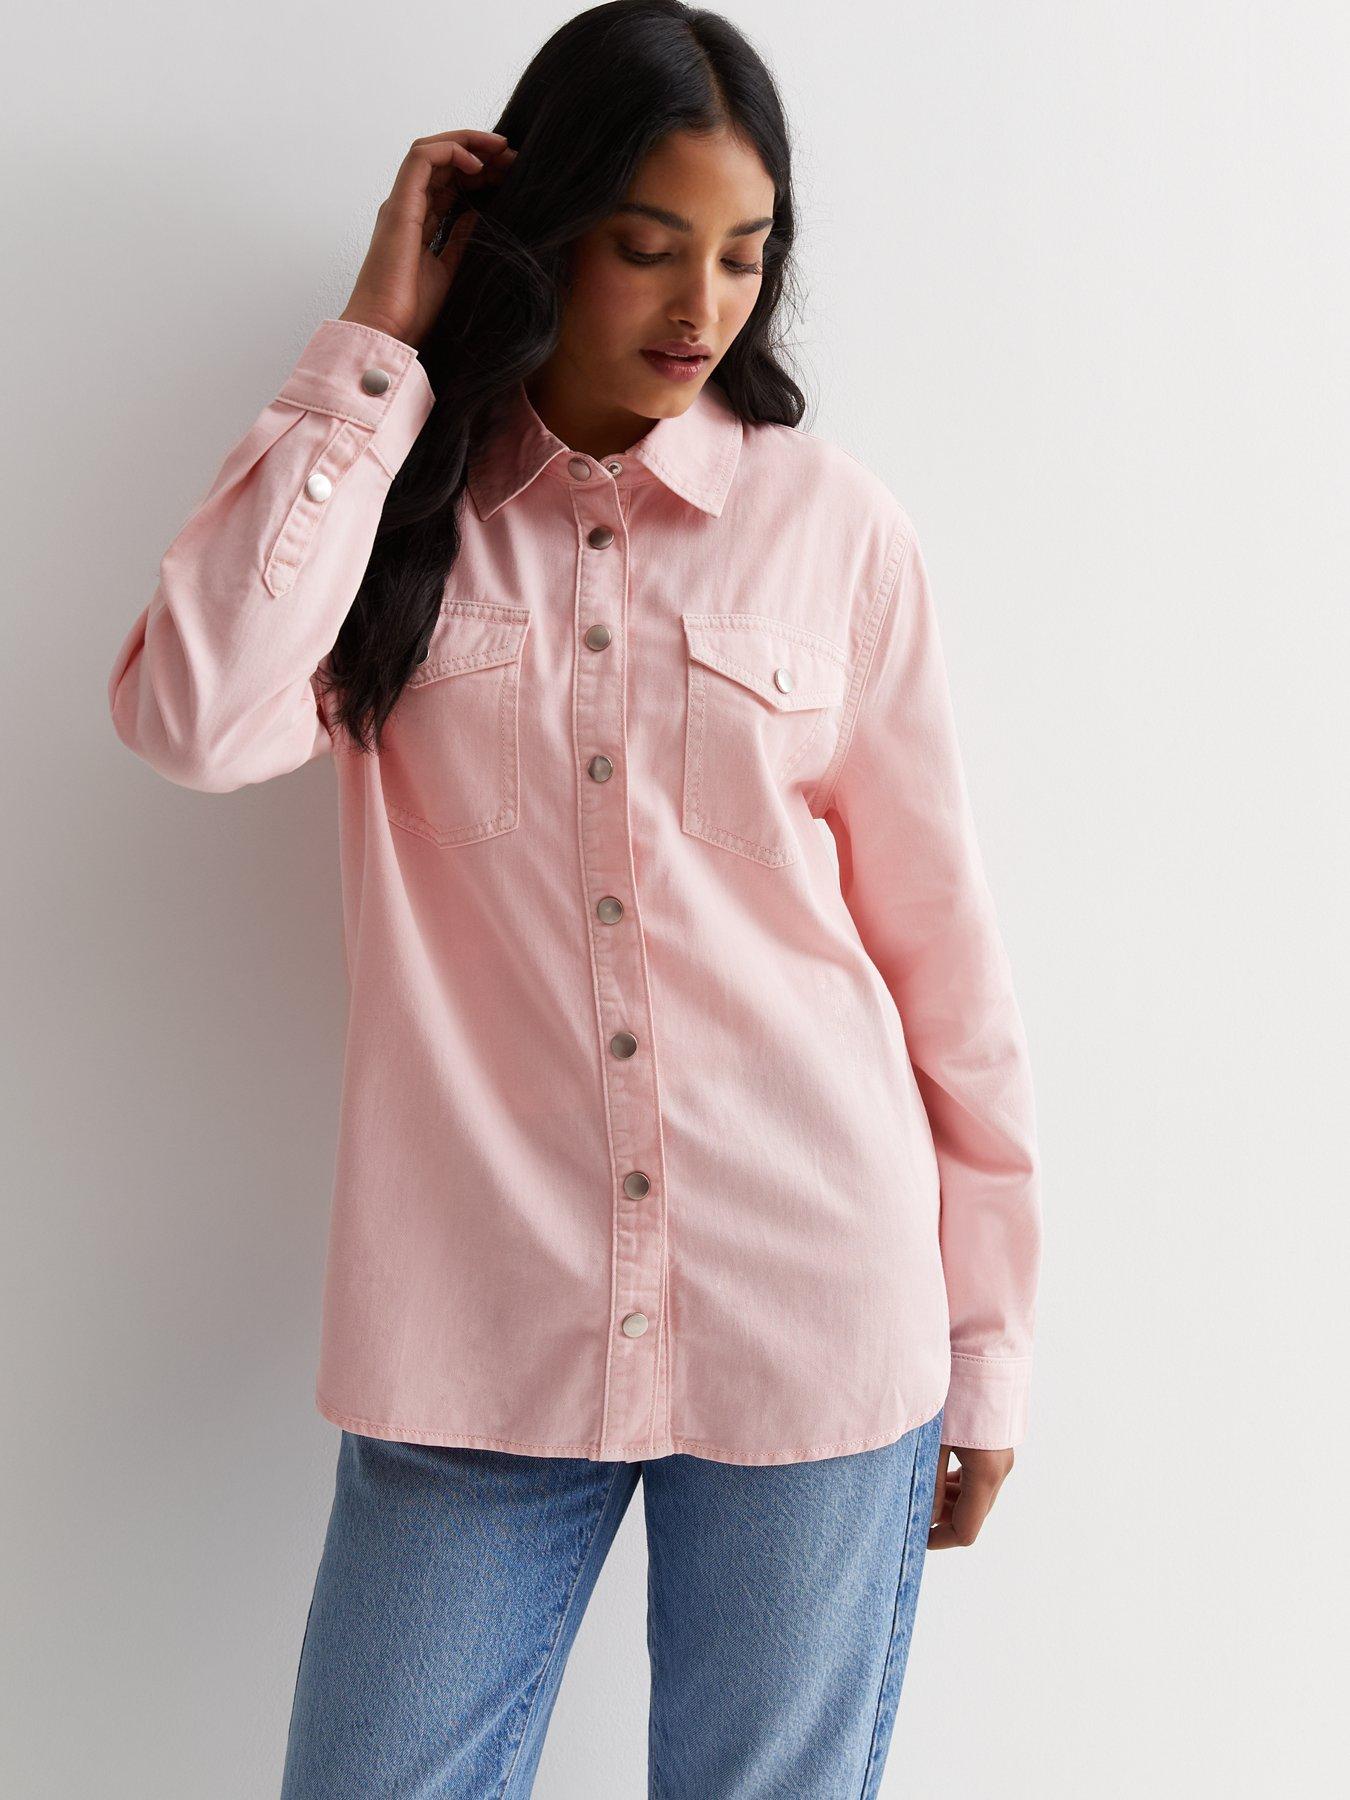 Light Pink Short Sleeve Shirt | New Look